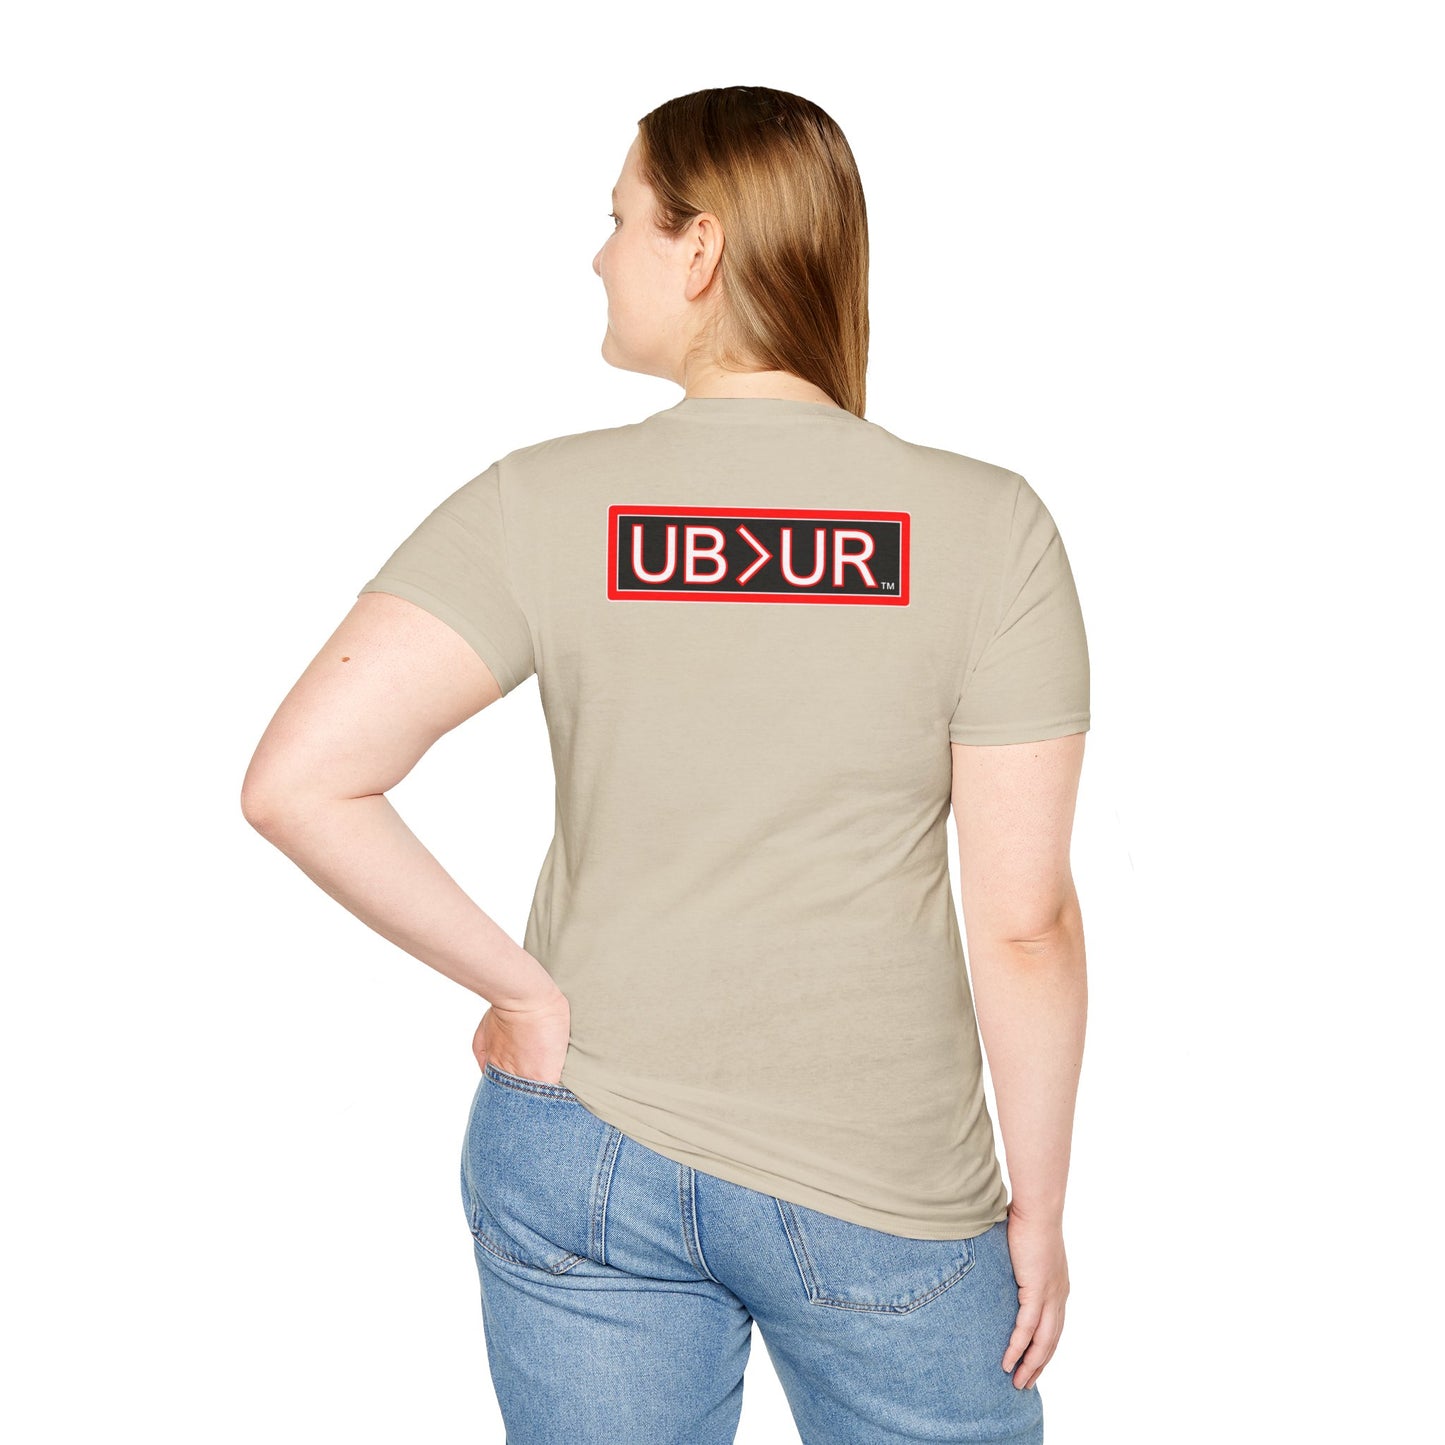 SUPERNATURAL-Unisex Softstyle T-Shirt-UB>UR on the back